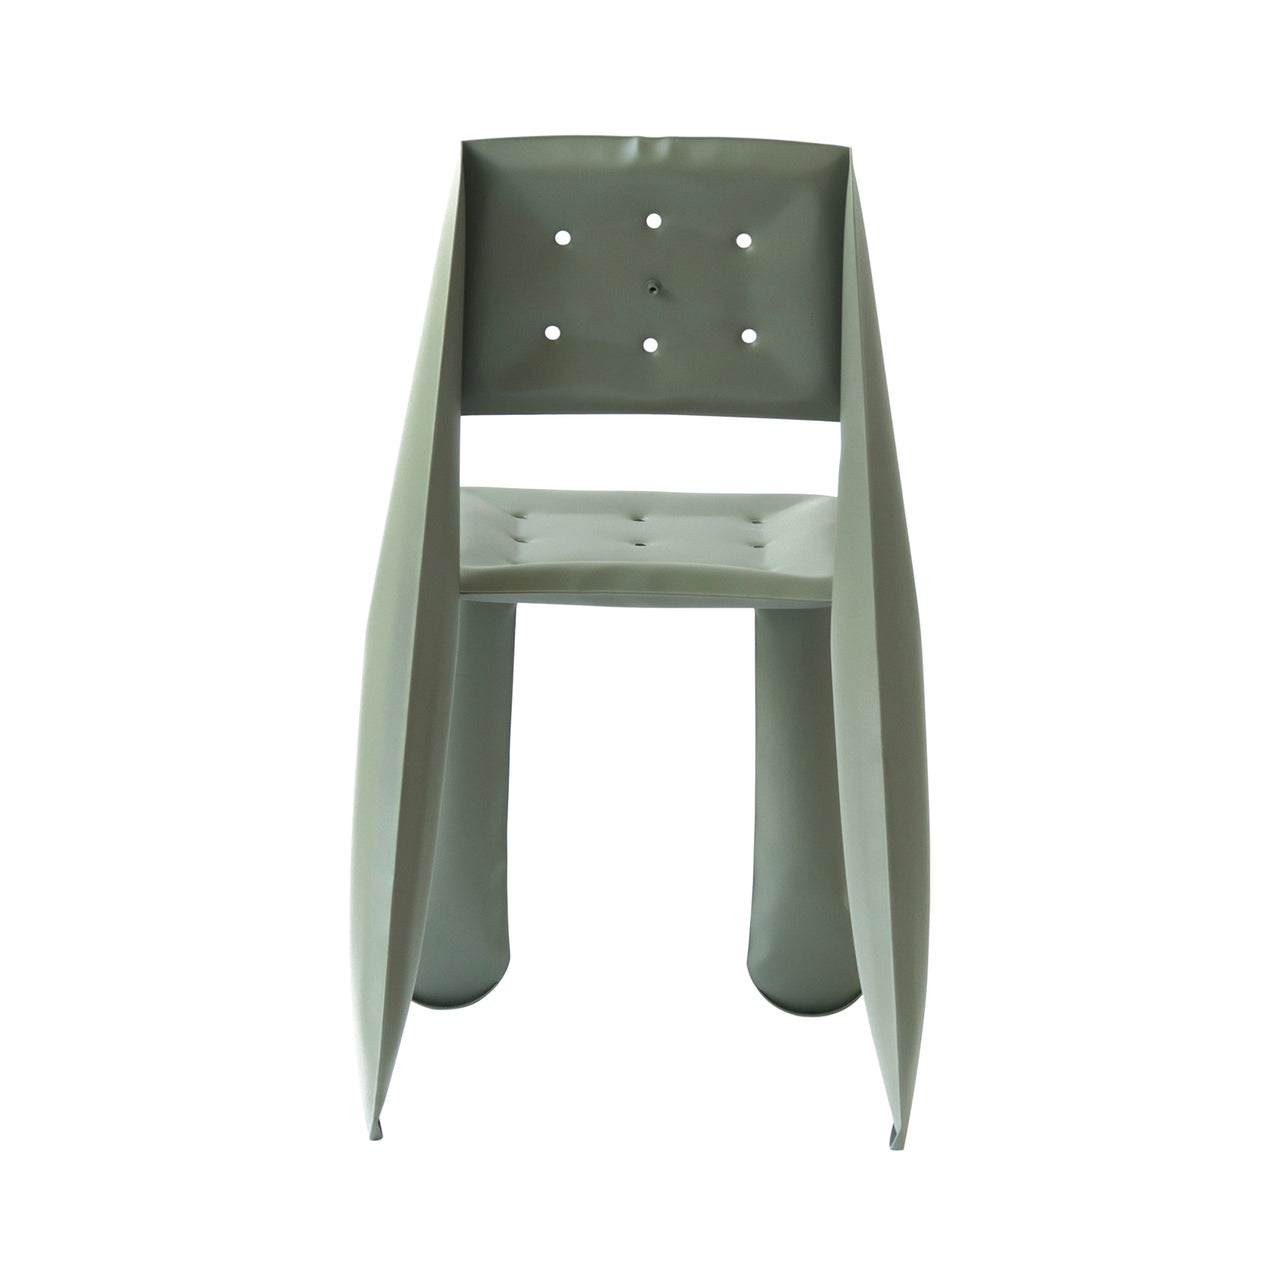 Chippensteel 0.5 Chair: Moss Grey Carbon Steel